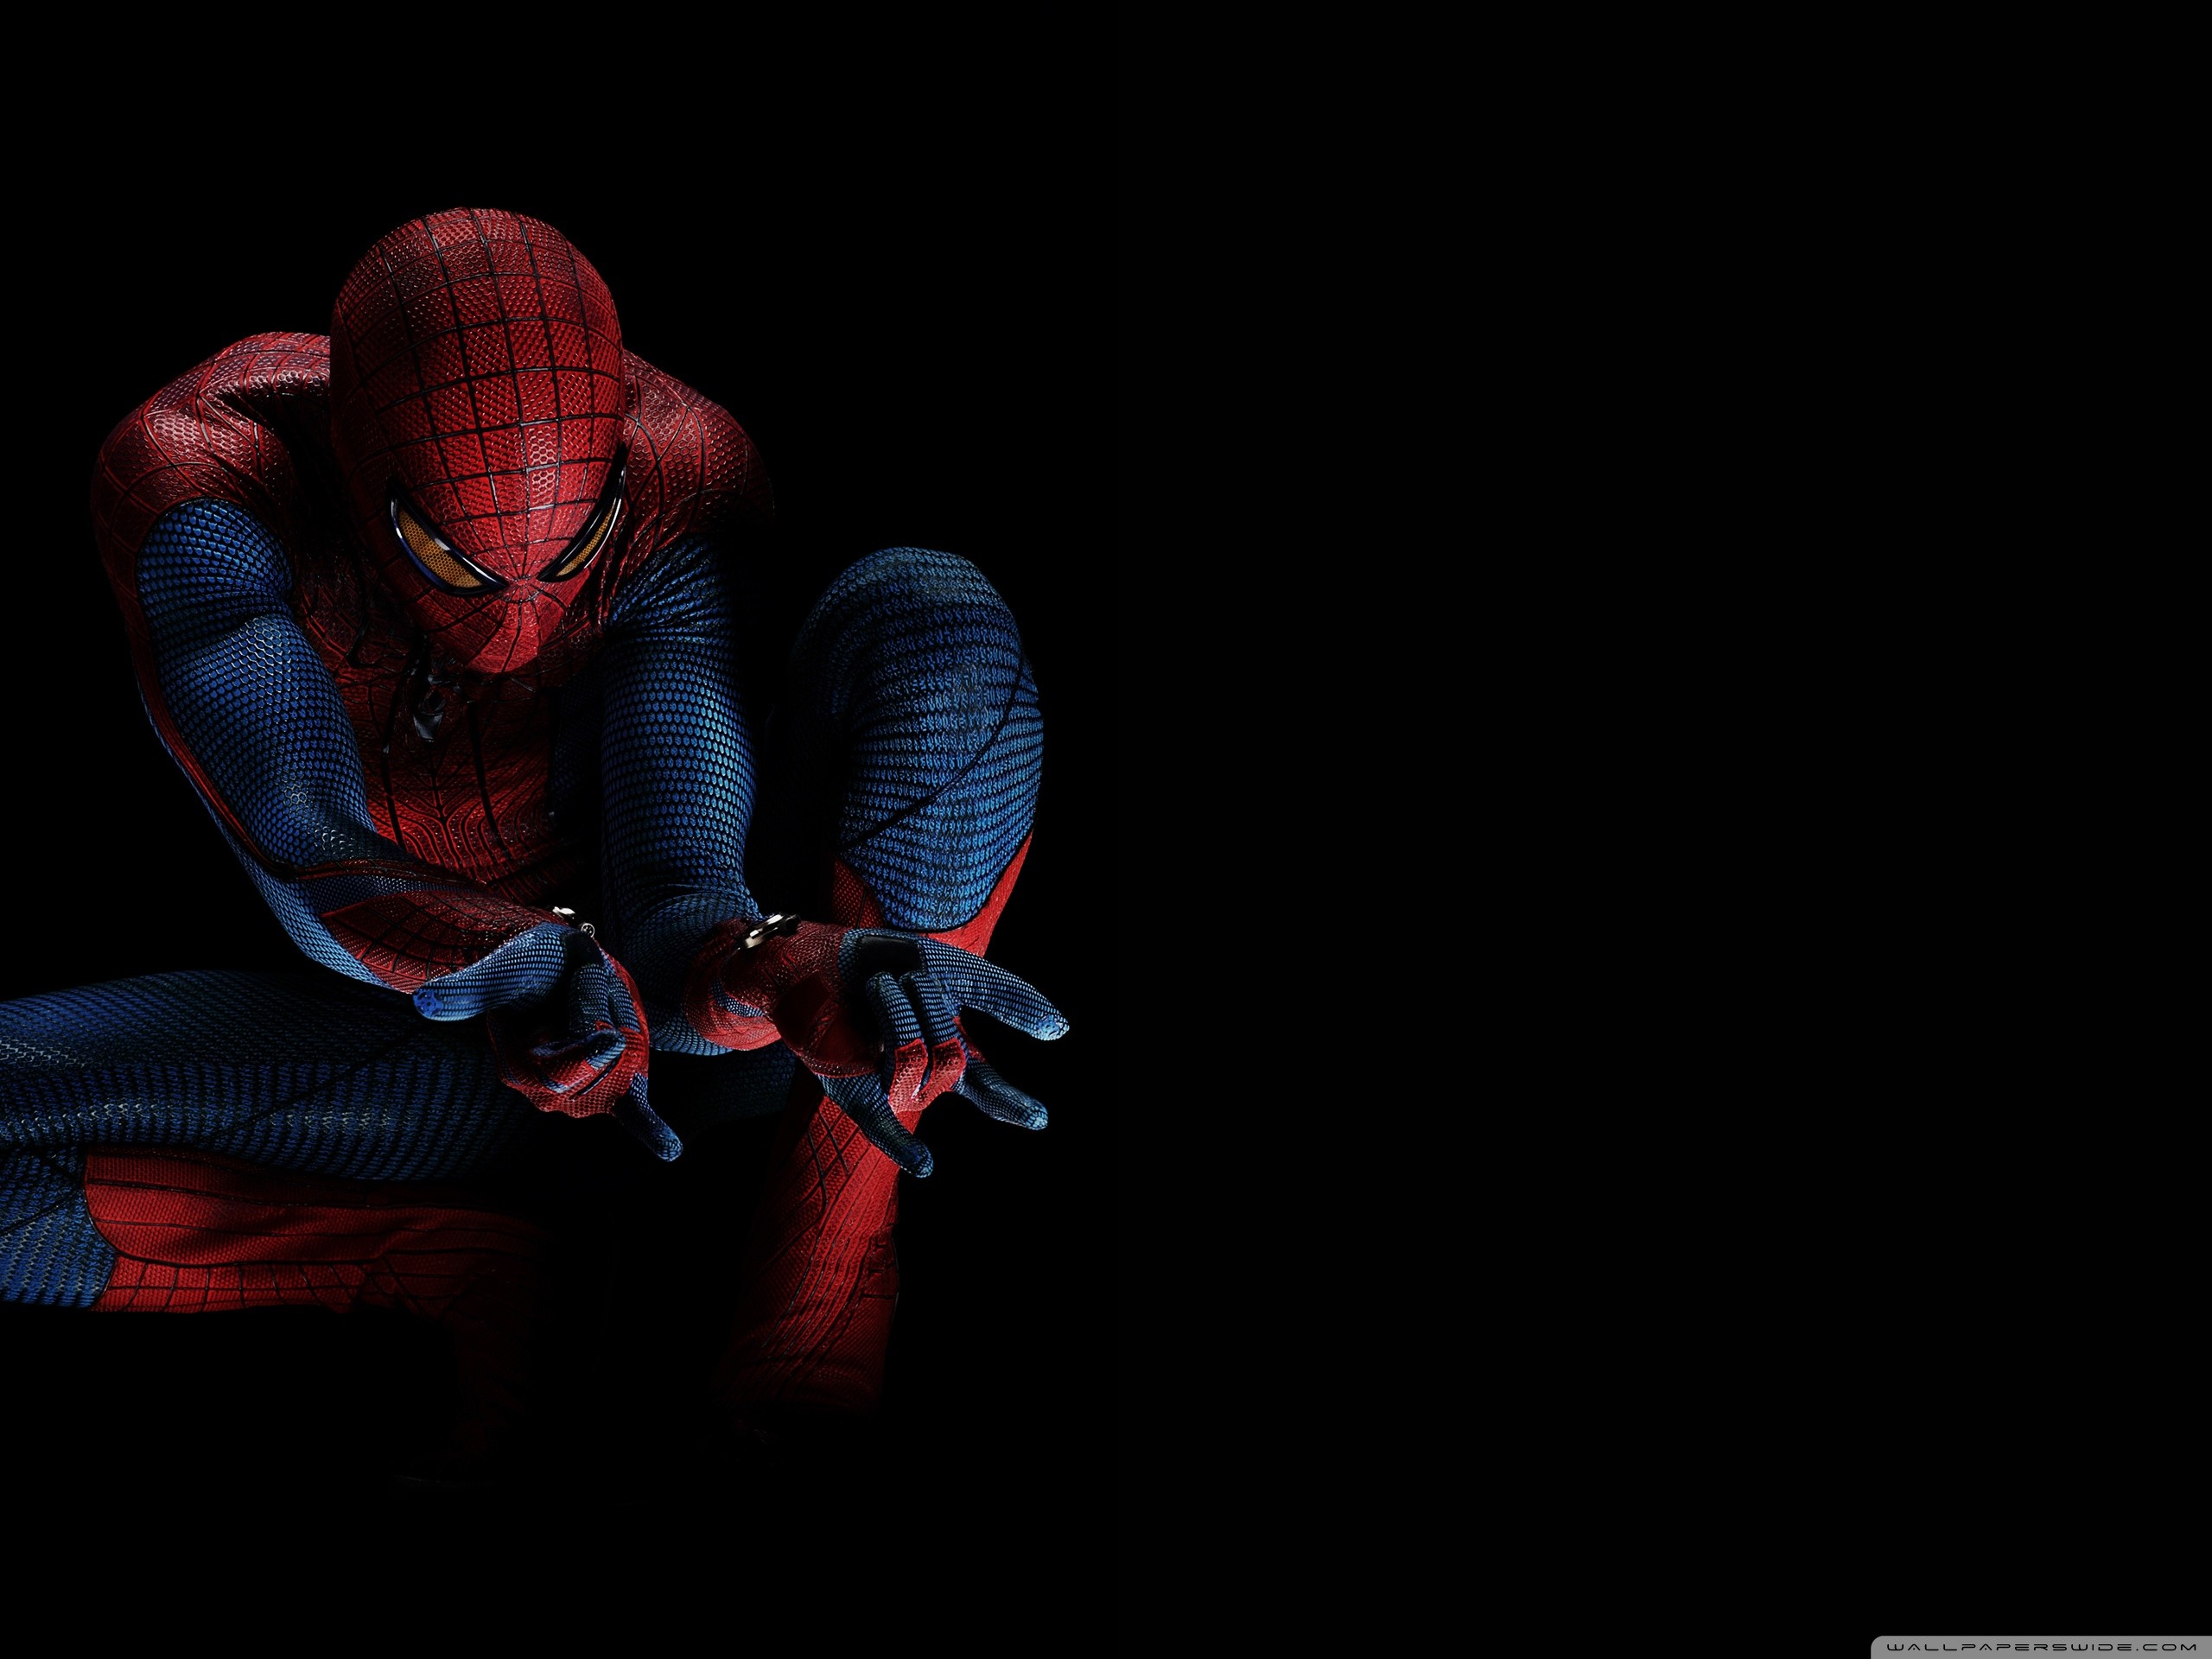 Marvel's Spider-Man Wallpapers in Ultra HD | 4K - Gameranx